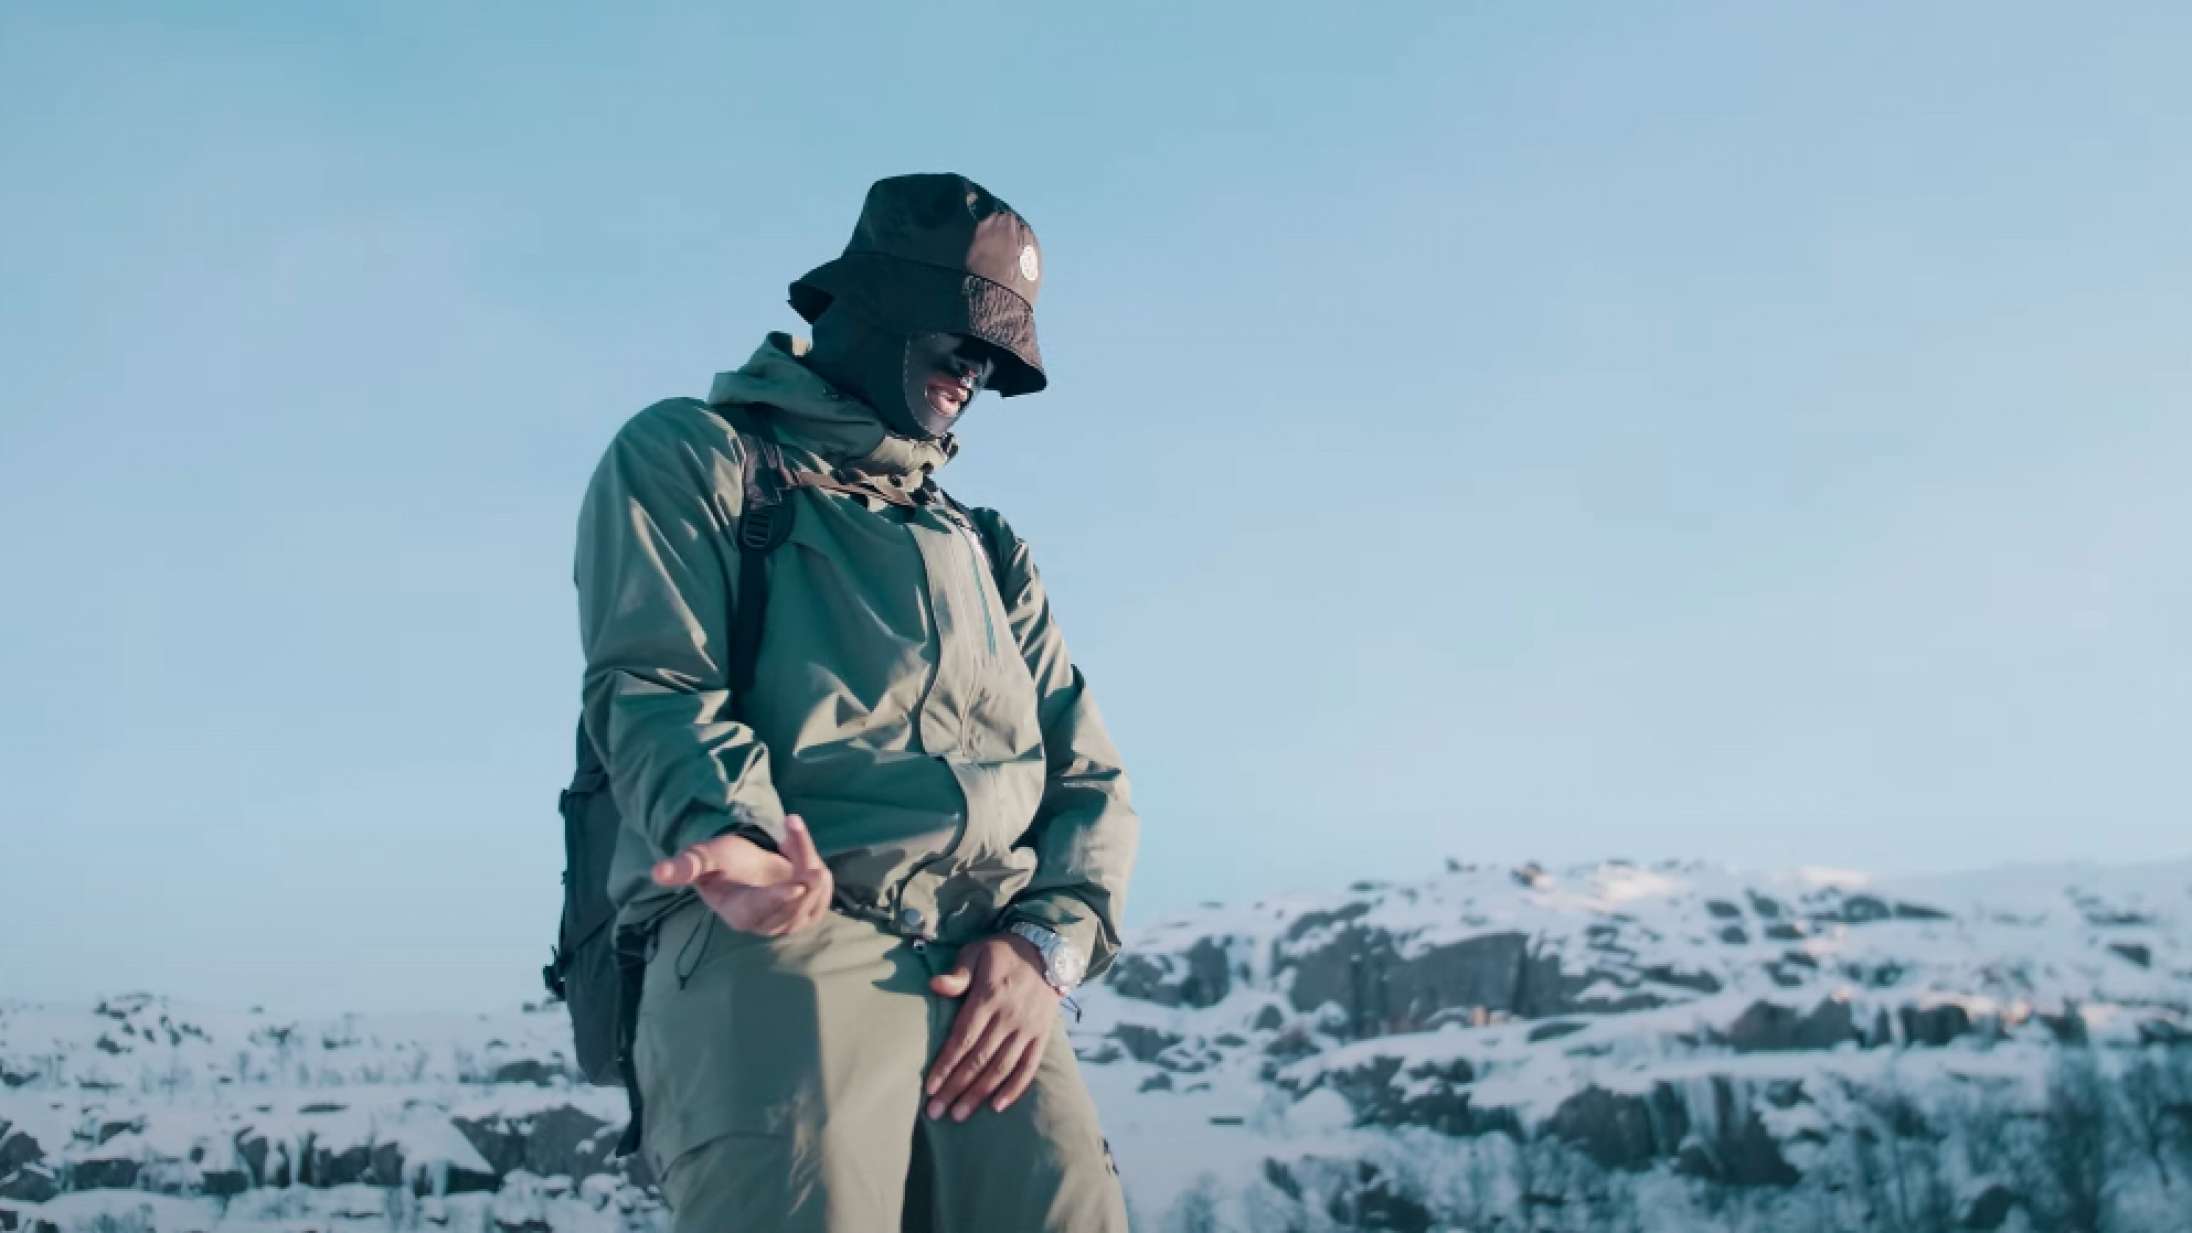 Maskeret dansk drill-rapper er på eventyr i de norske fjelde i ny musikvideo